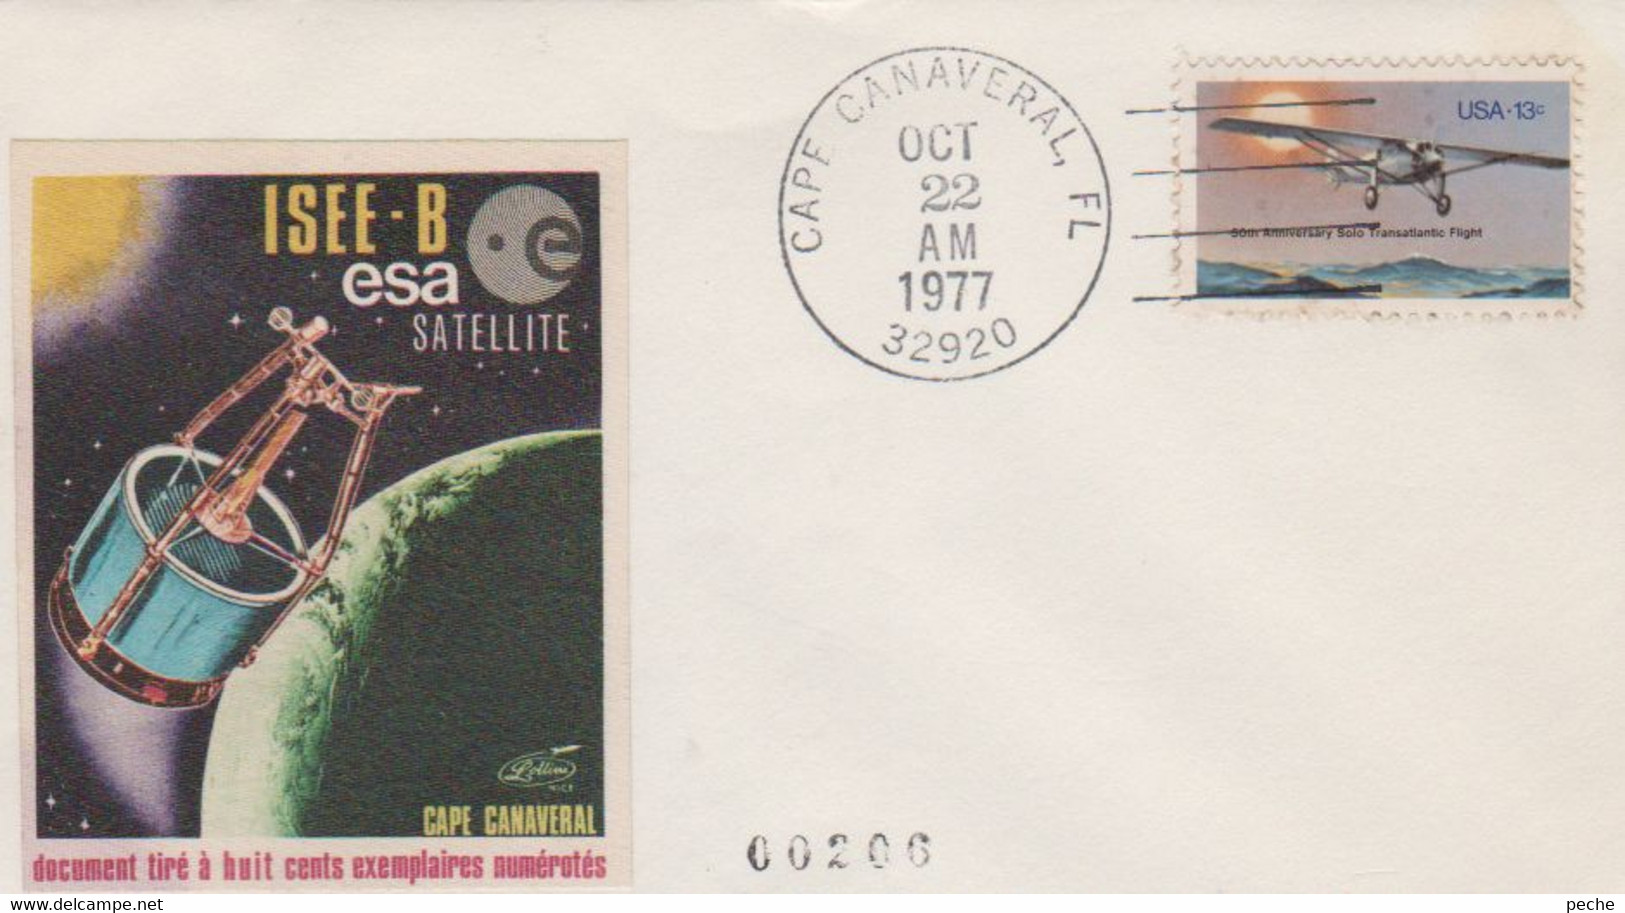 N°1181 N -lettre (cover) -ISEE - B -Esa Satellite- - United States